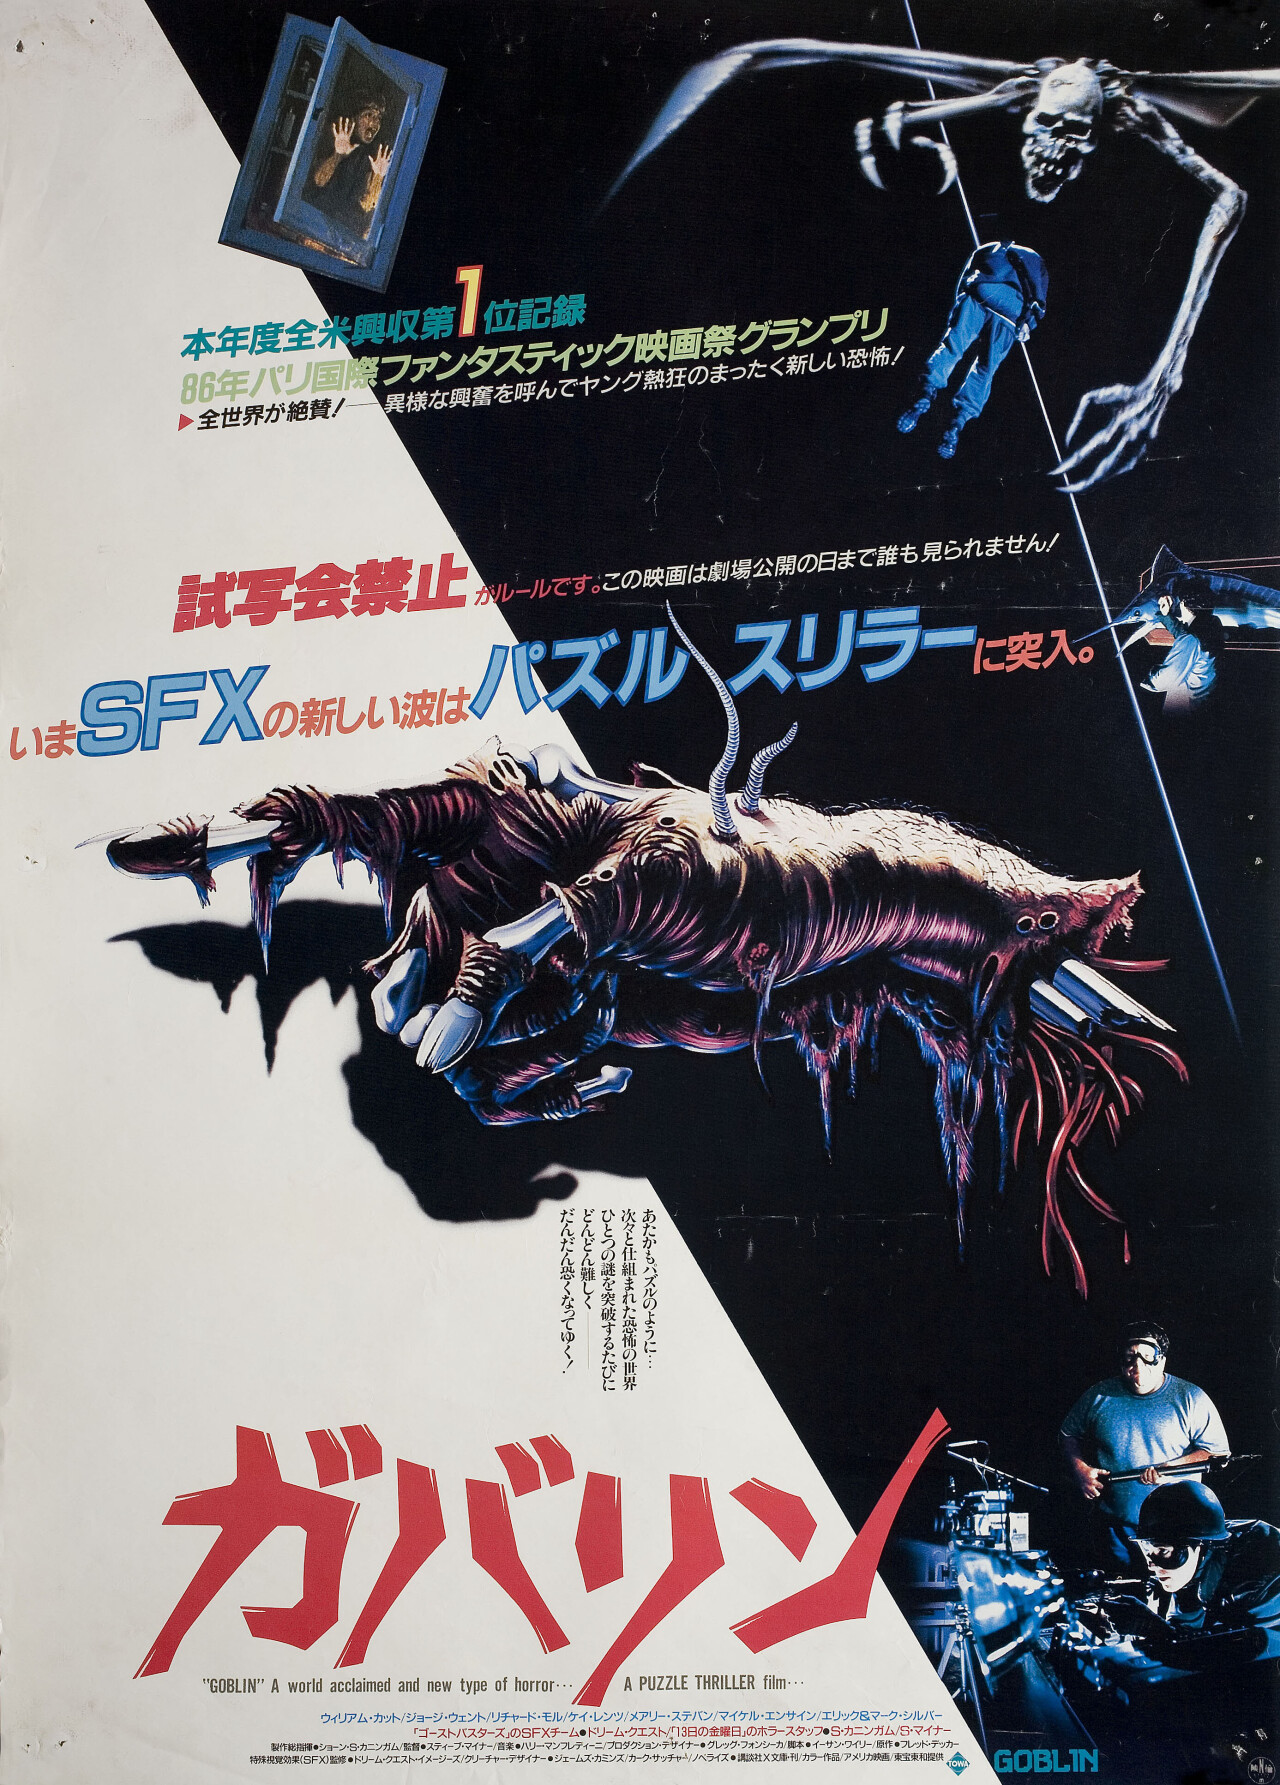 Дом (House, 1986), режиссёр Стив Майнер, японский постер к фильму (ужасы, 1986 год)